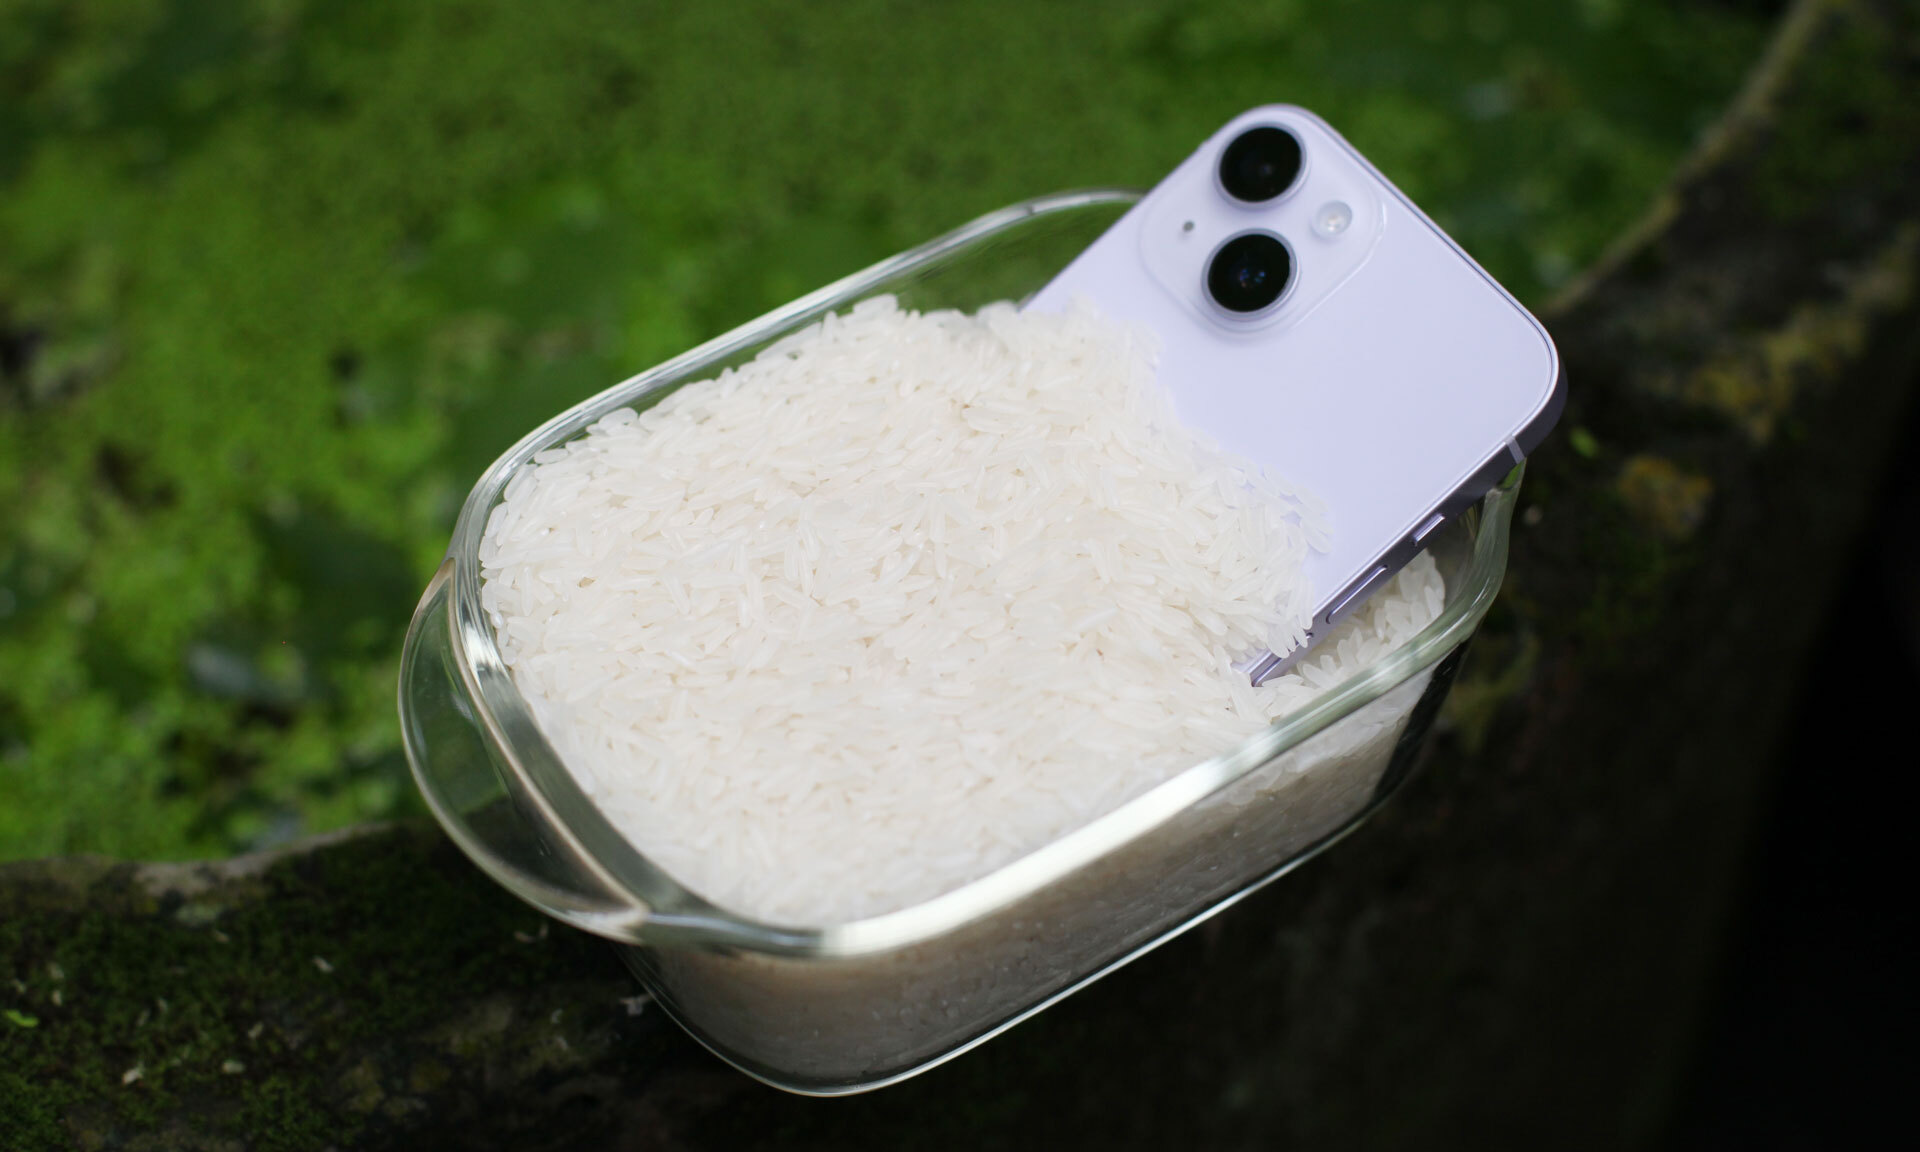 Có nên bỏ điện thoại iPhone bị dính nước vào gạo?